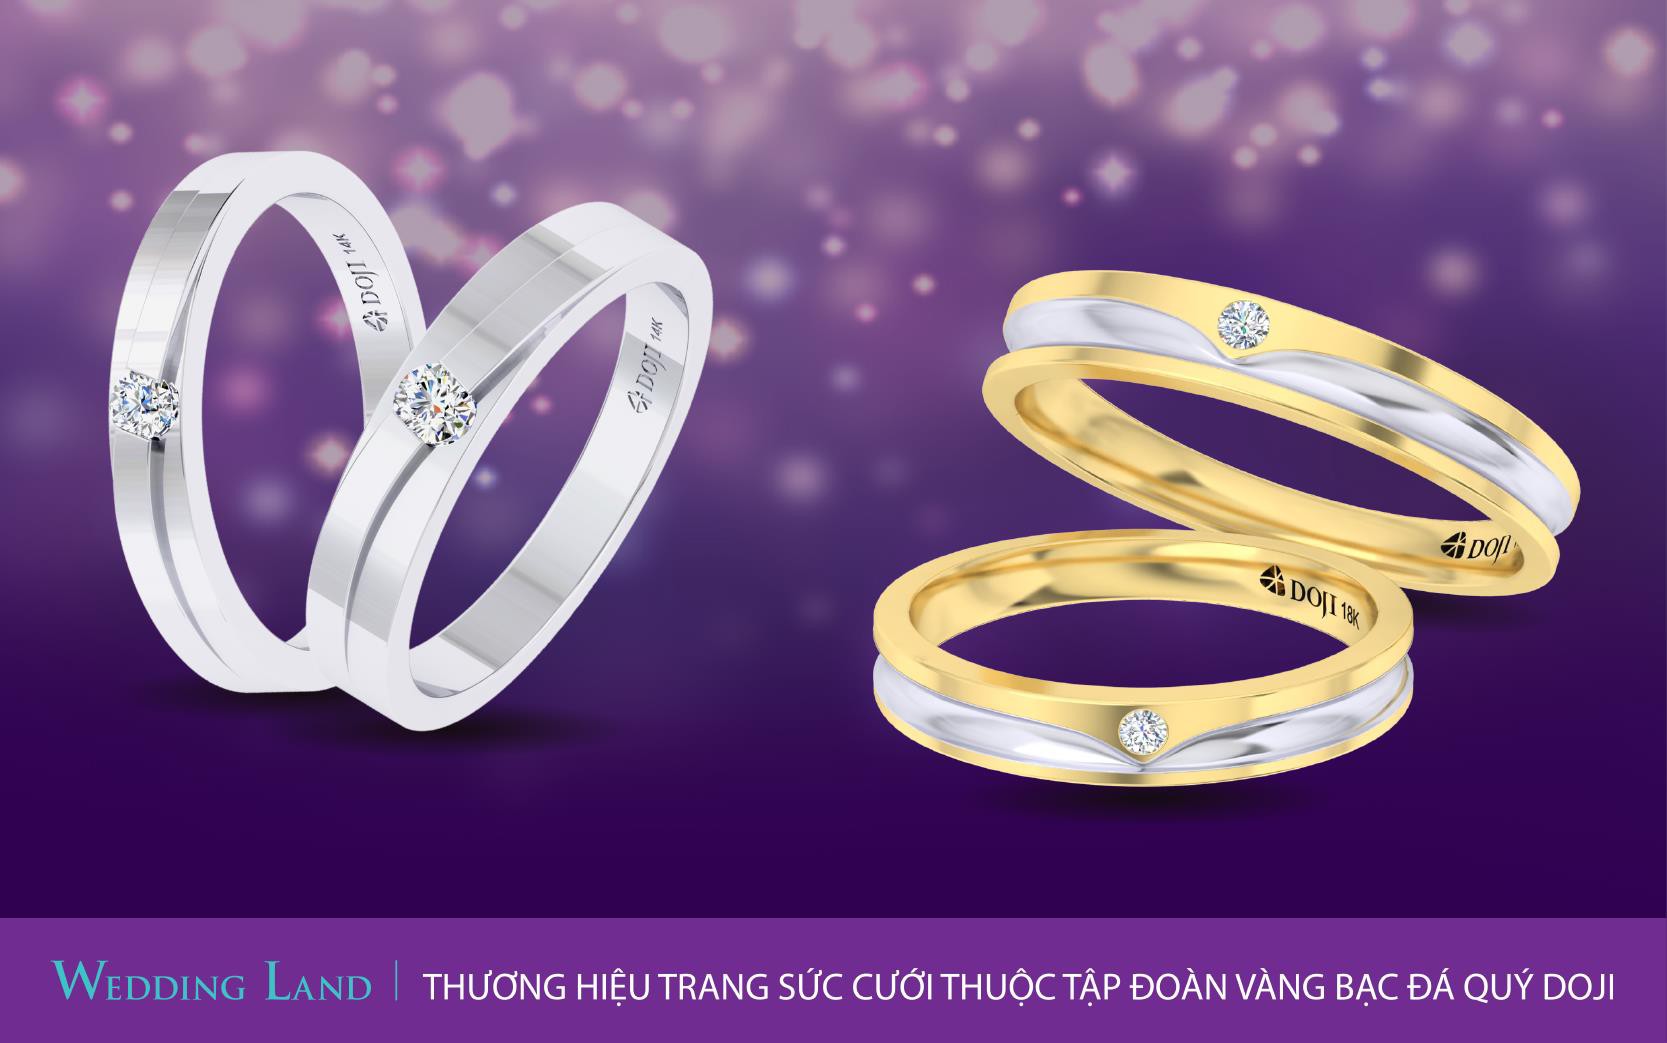 Tuần lễ Trang sức DOJI 2019: Đừng bỏ lỡ 100 cặp nhẫn cưới giá 4.999.999 đồng - Ảnh 4.